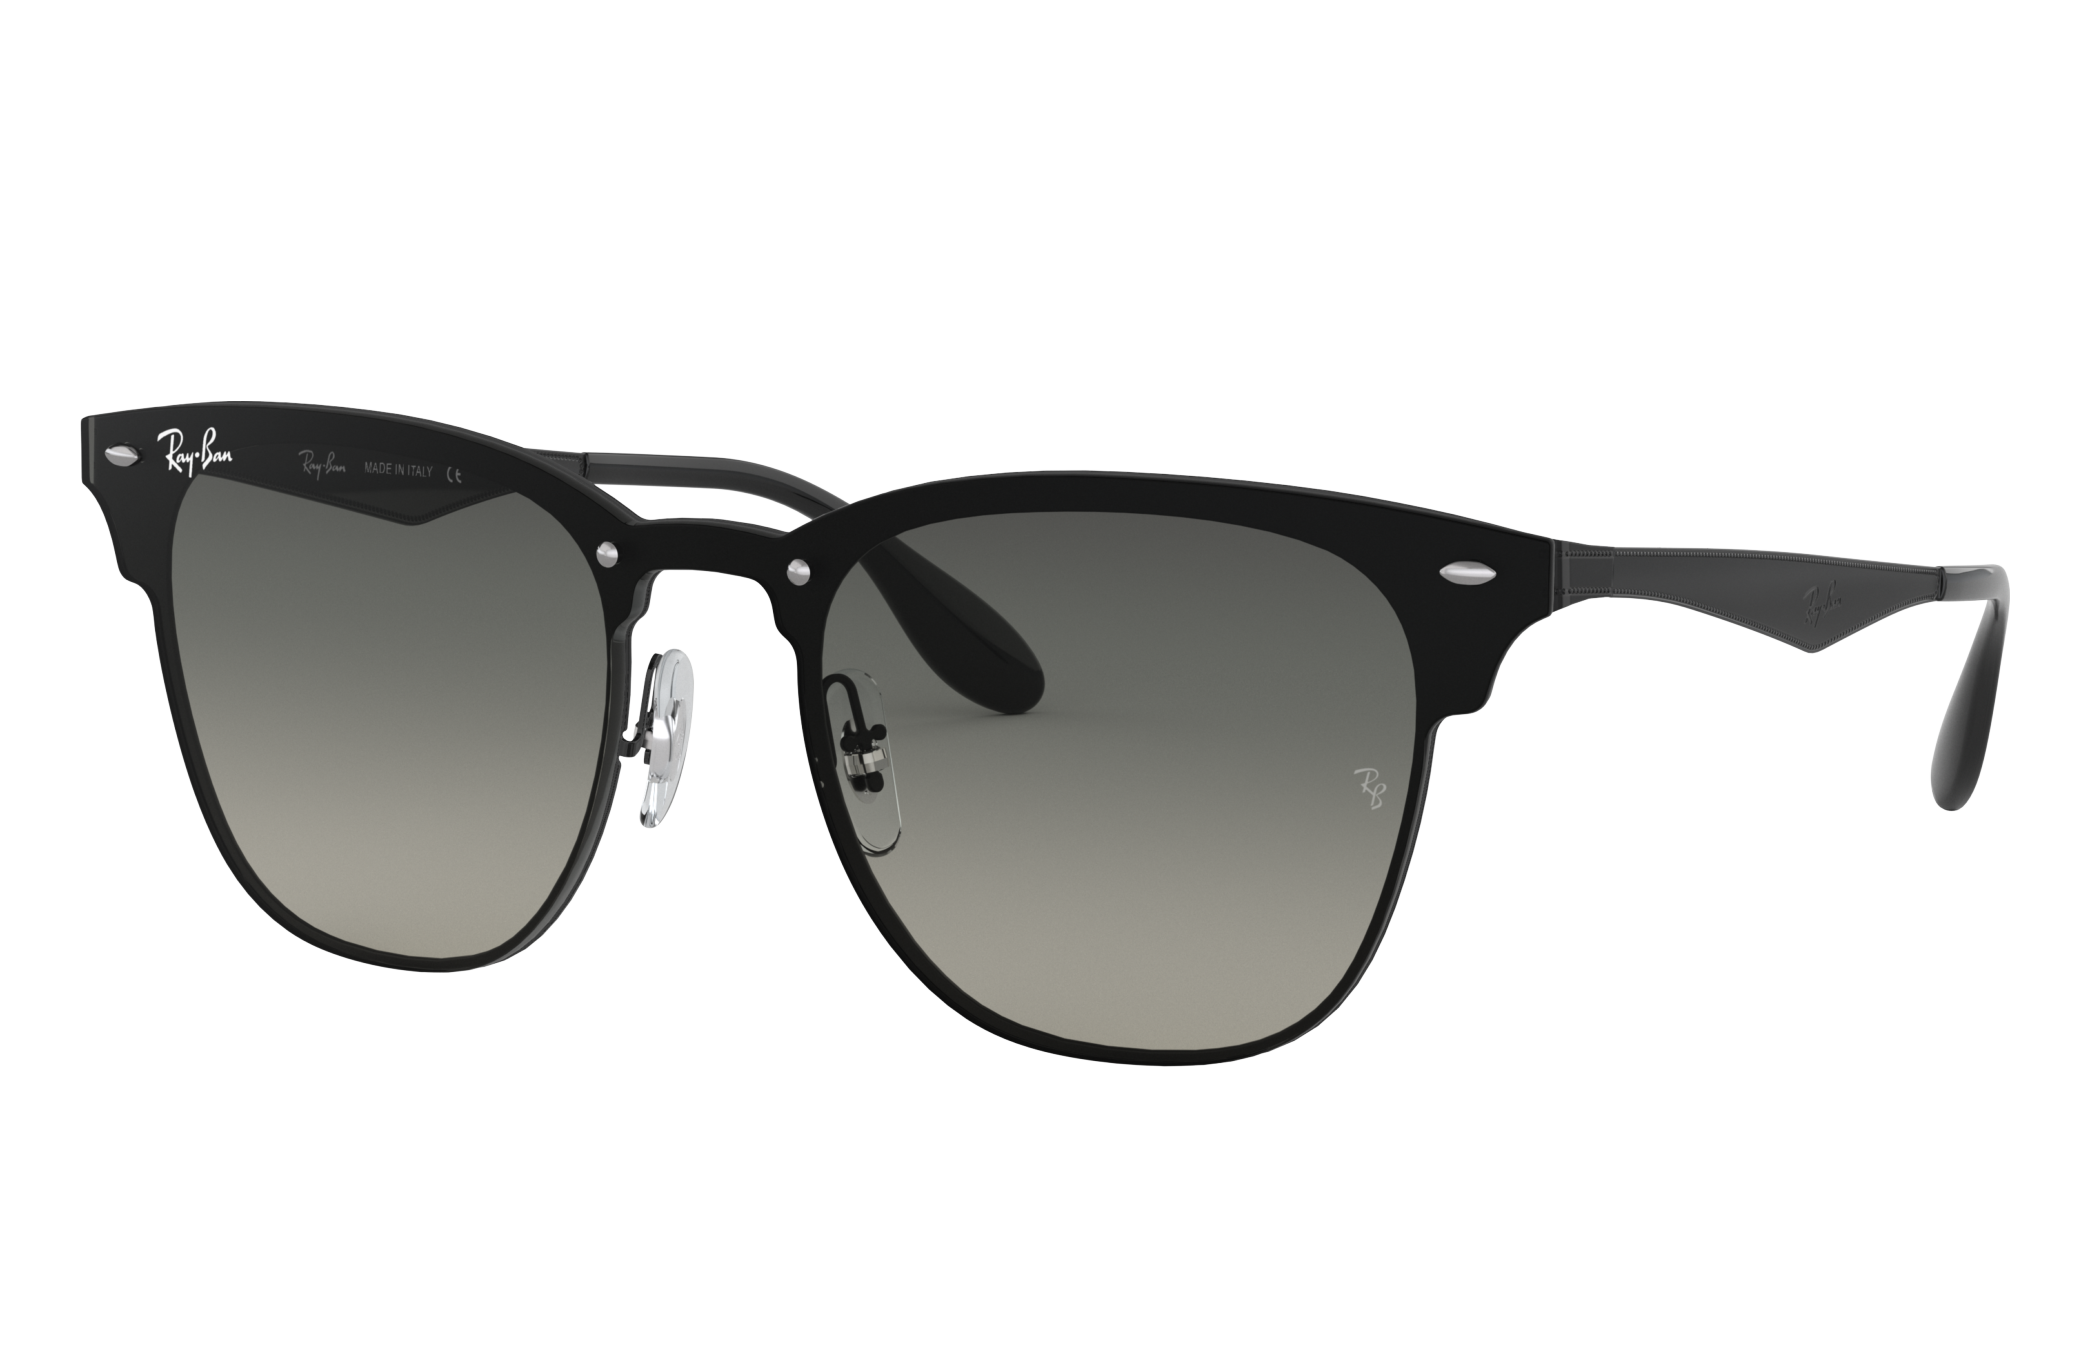 flexibel Inconsistent Gentleman vriendelijk Blaze Clubmaster Sunglasses in Black and Grey | Ray-Ban®